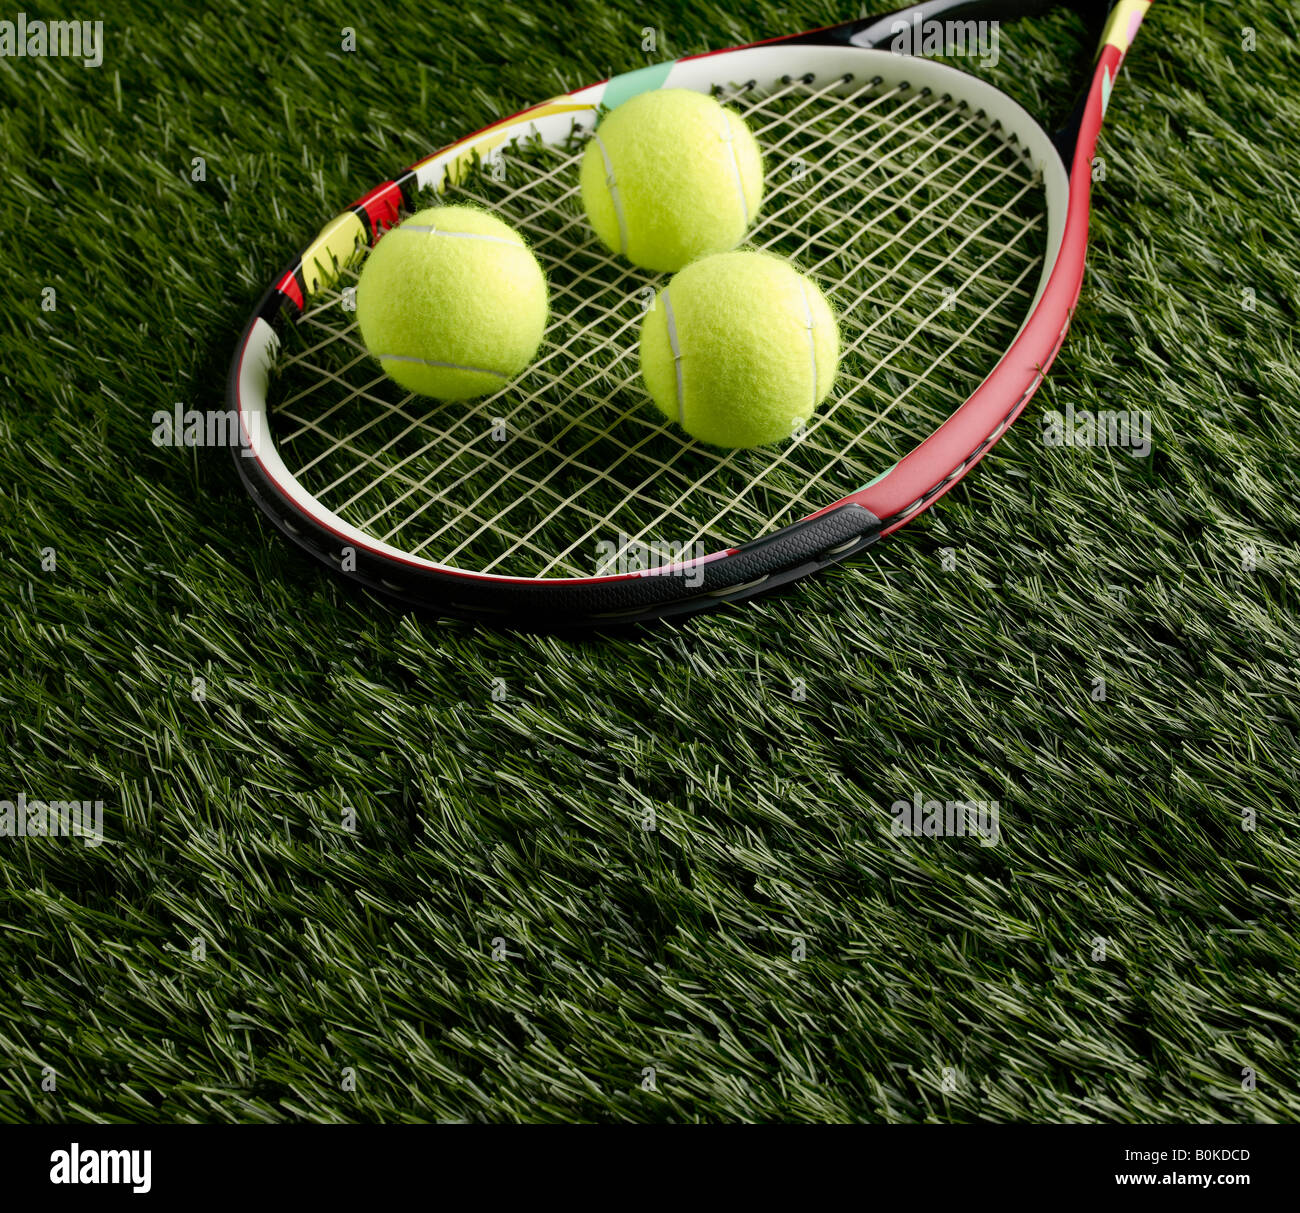 Sur les balles de tennis racket Banque D'Images